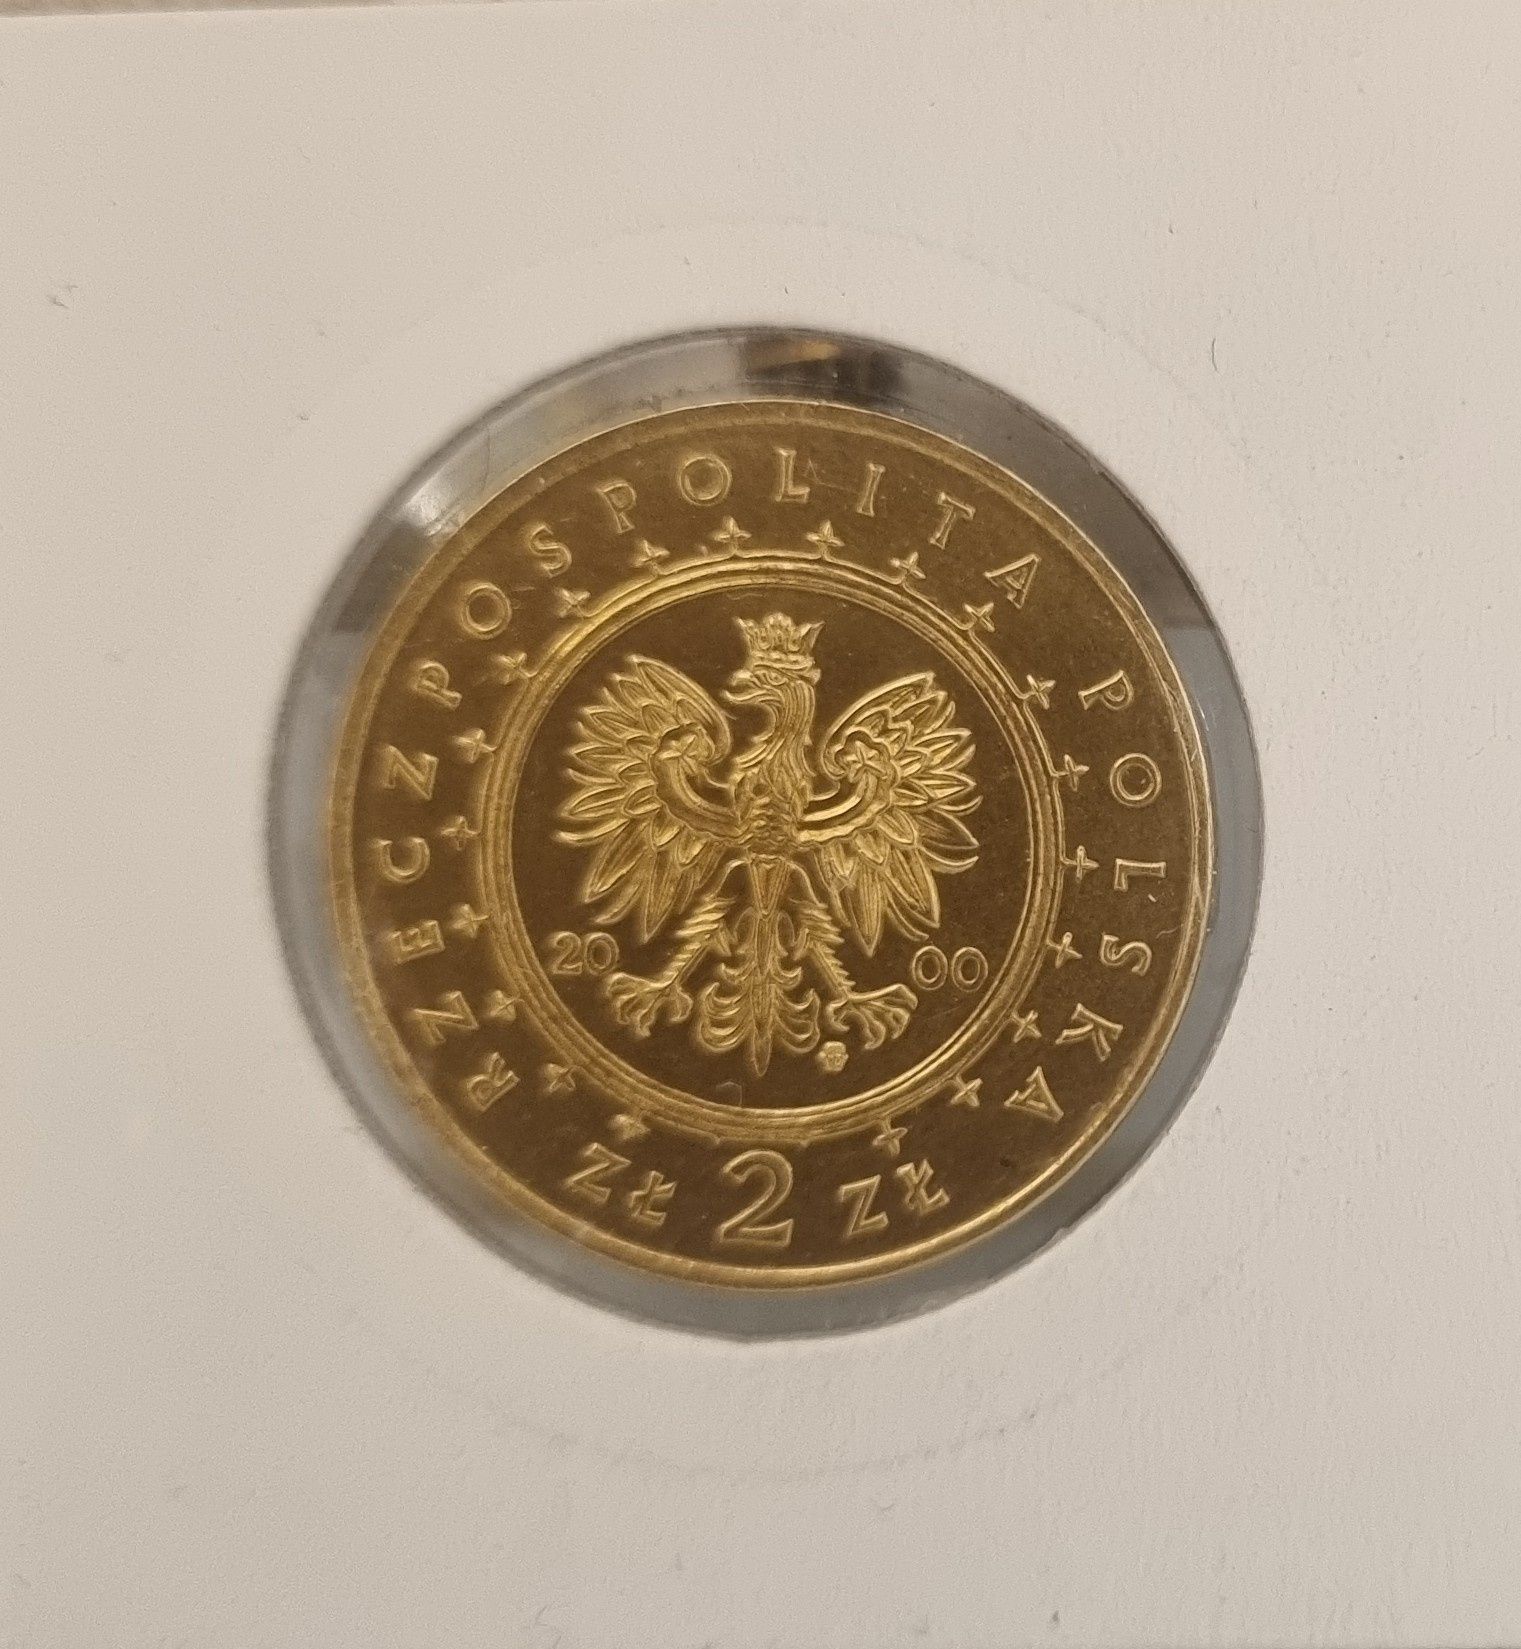 Stare monety / moneta 2 zł NG 2000 r. Pałac w Wilanowie